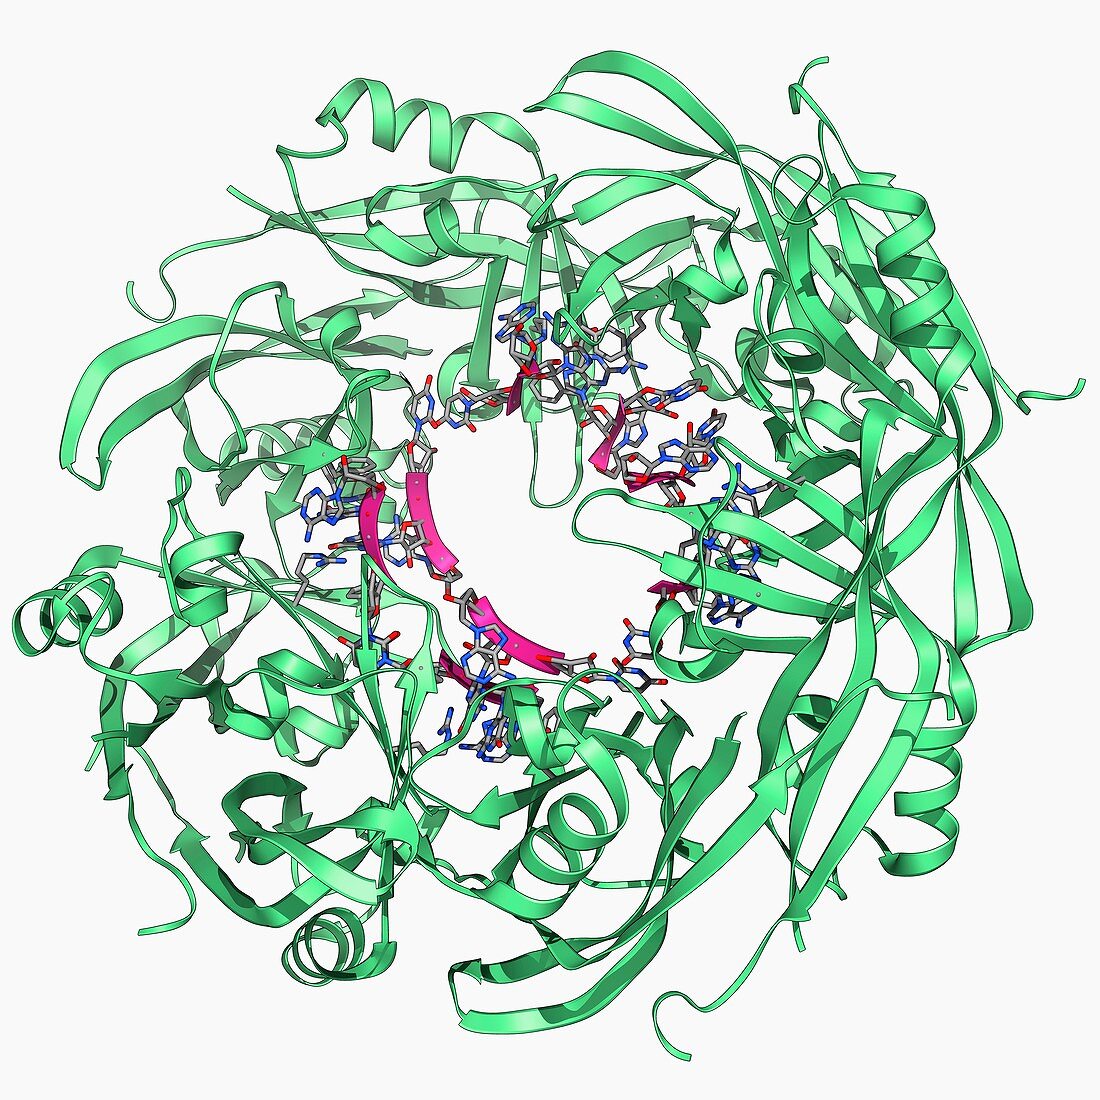 Ebola matrix protein molecule